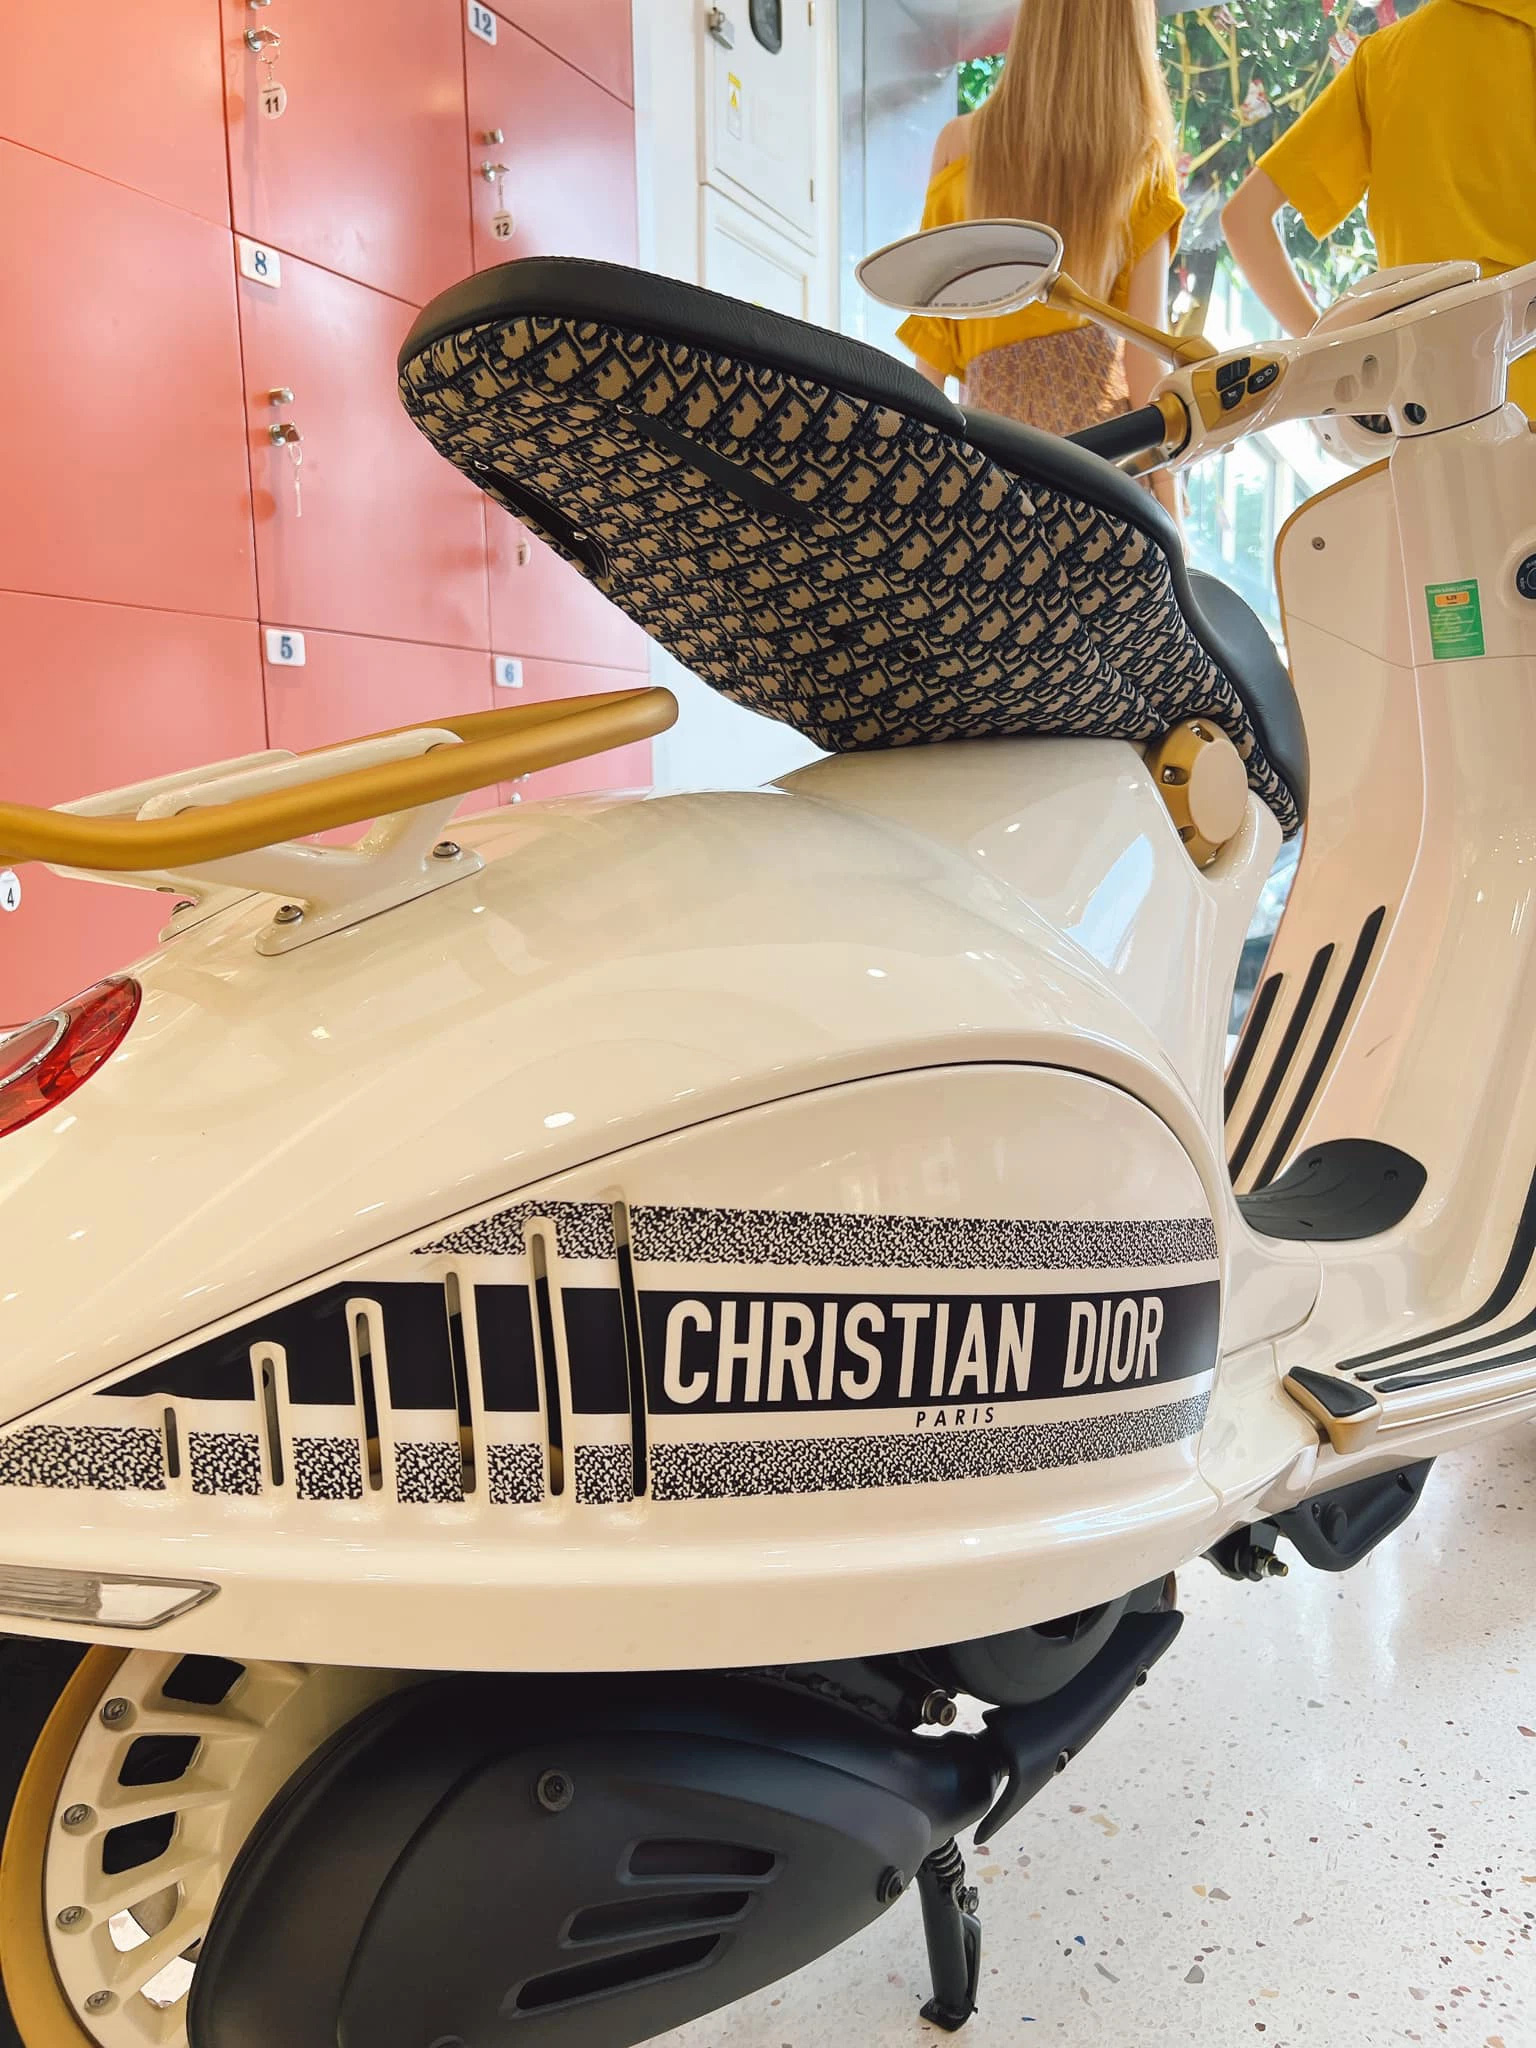 Dân buôn săn lùng hàng hiếm Vespa 946 Christian Dior bị thổi giá trên  trời  AutoMotorVN